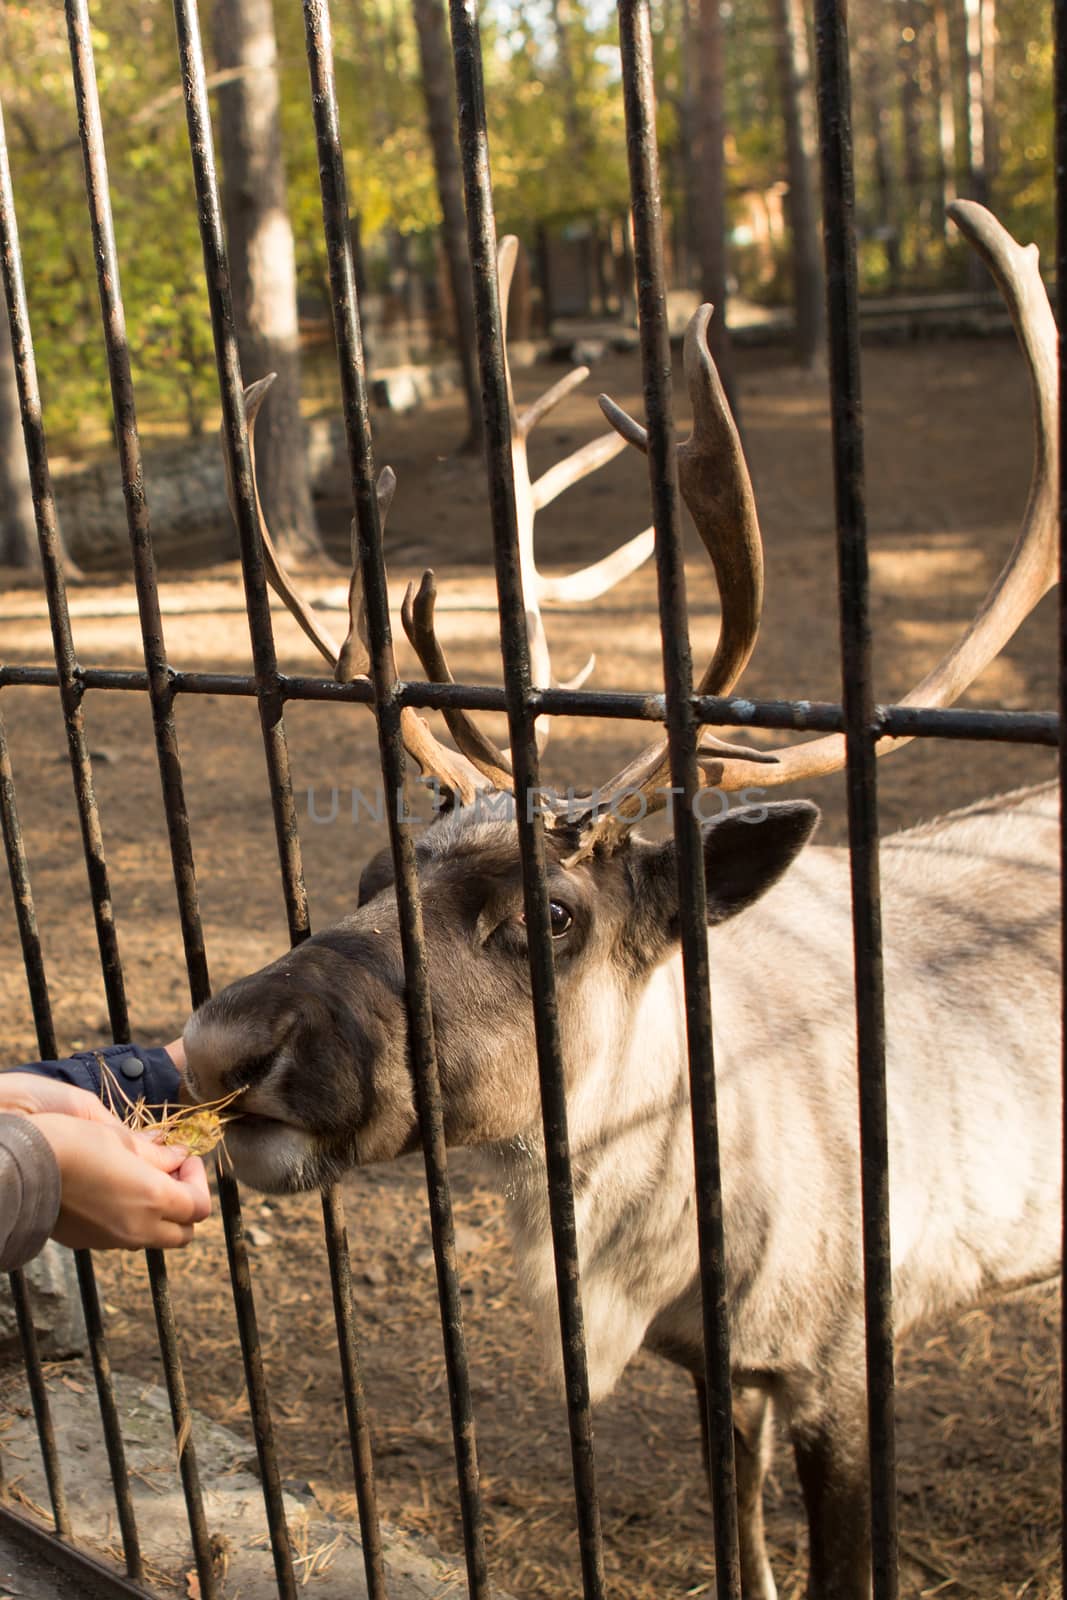 feeding deer at the zoo by olgagordeeva